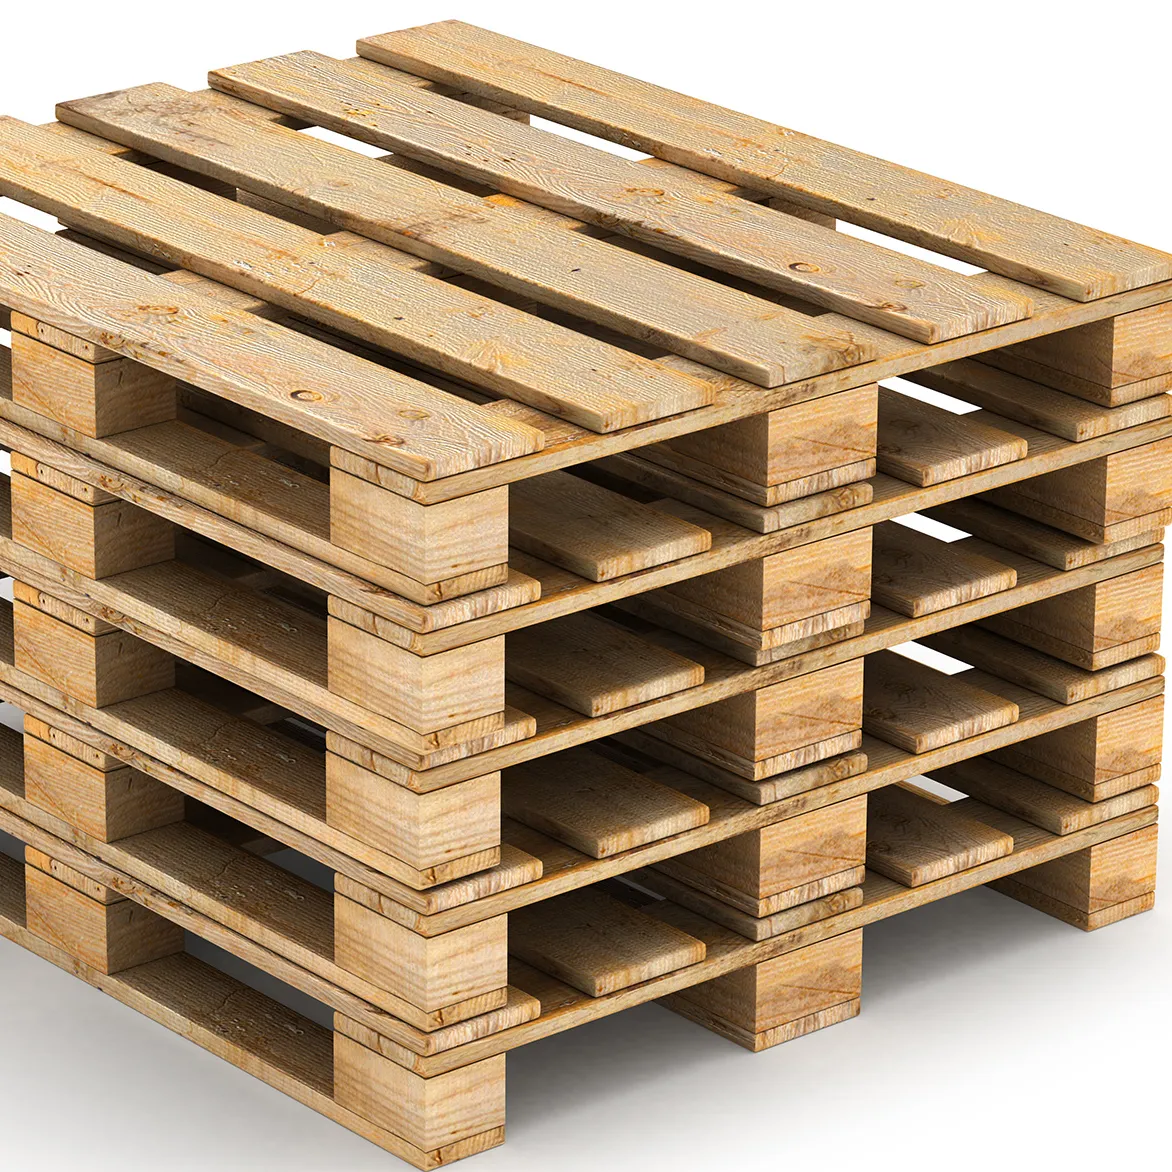 Neue Kiefer verwendet x Palette Holzfüße, billige Epal Holz Euro Standard Palette, Hartholz Holz palette